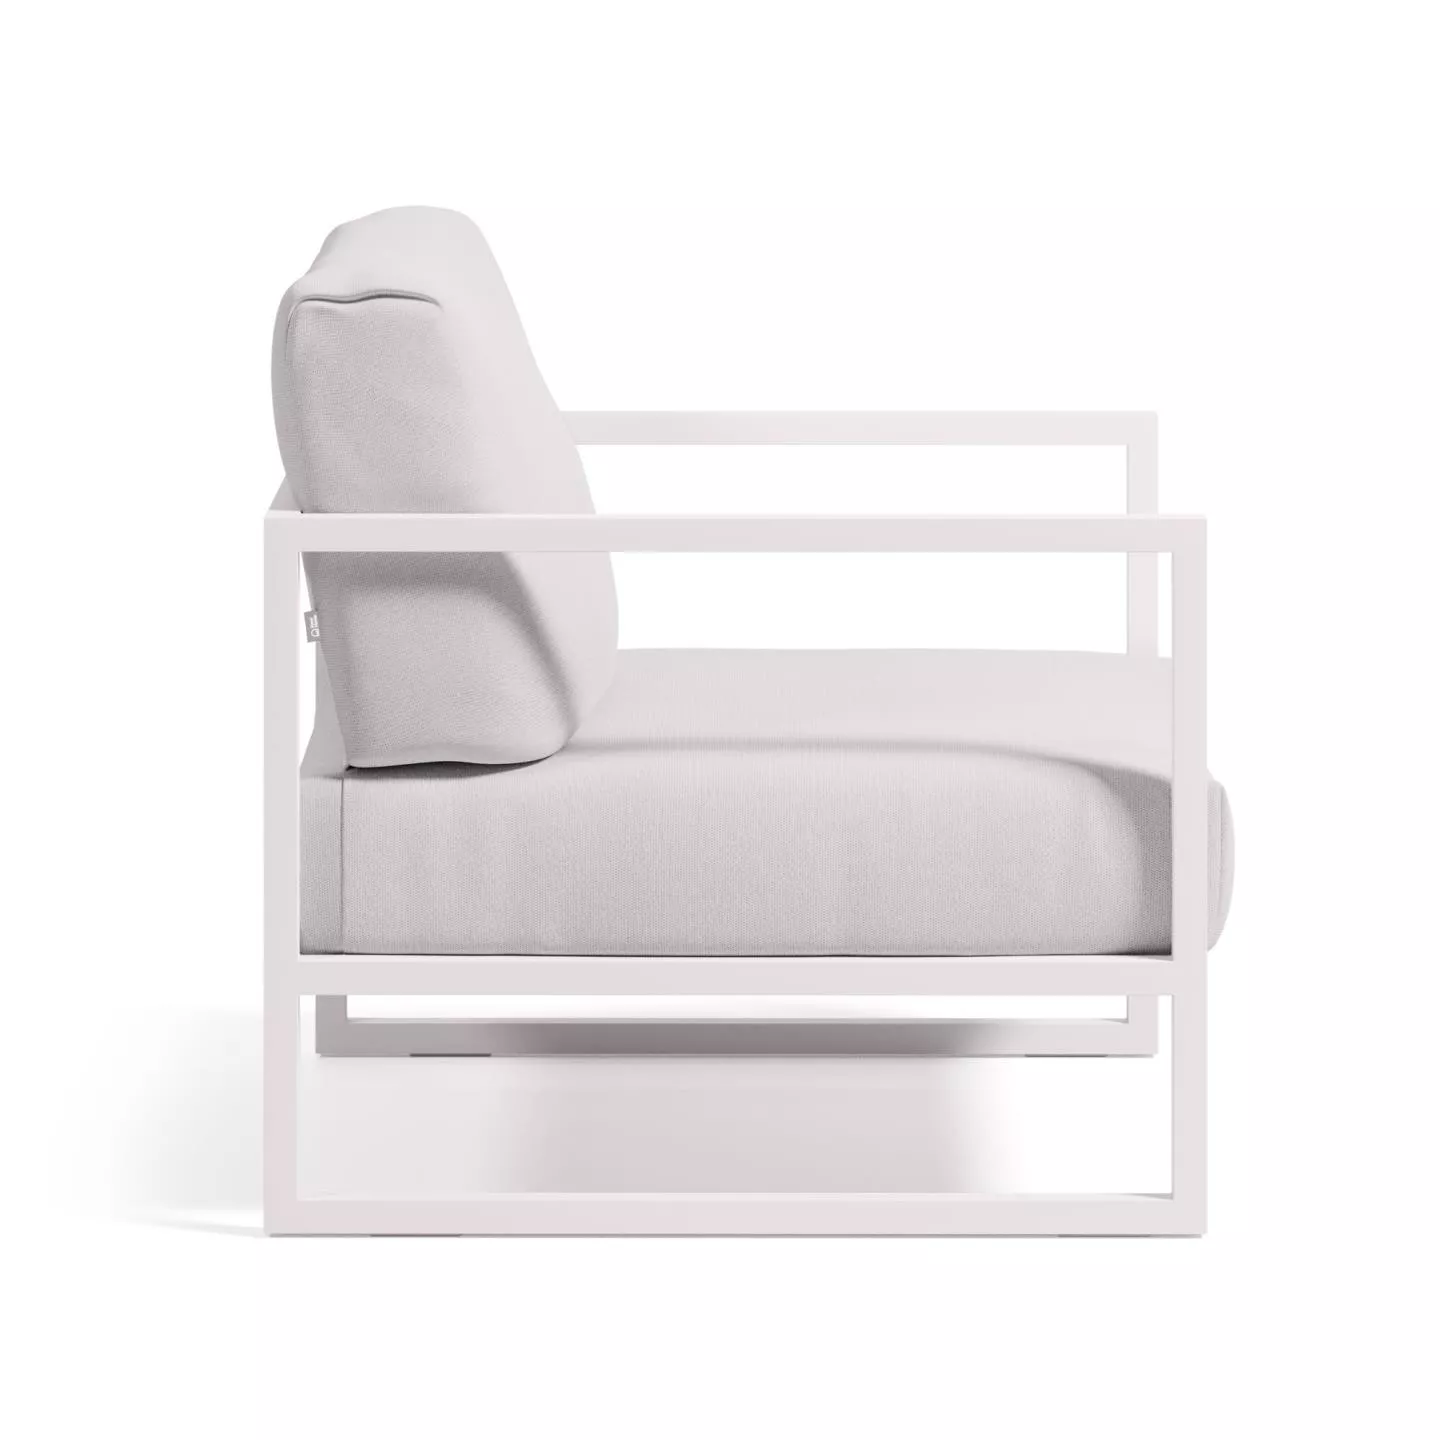 Кресло для улицы La Forma Comova из алюминия белое